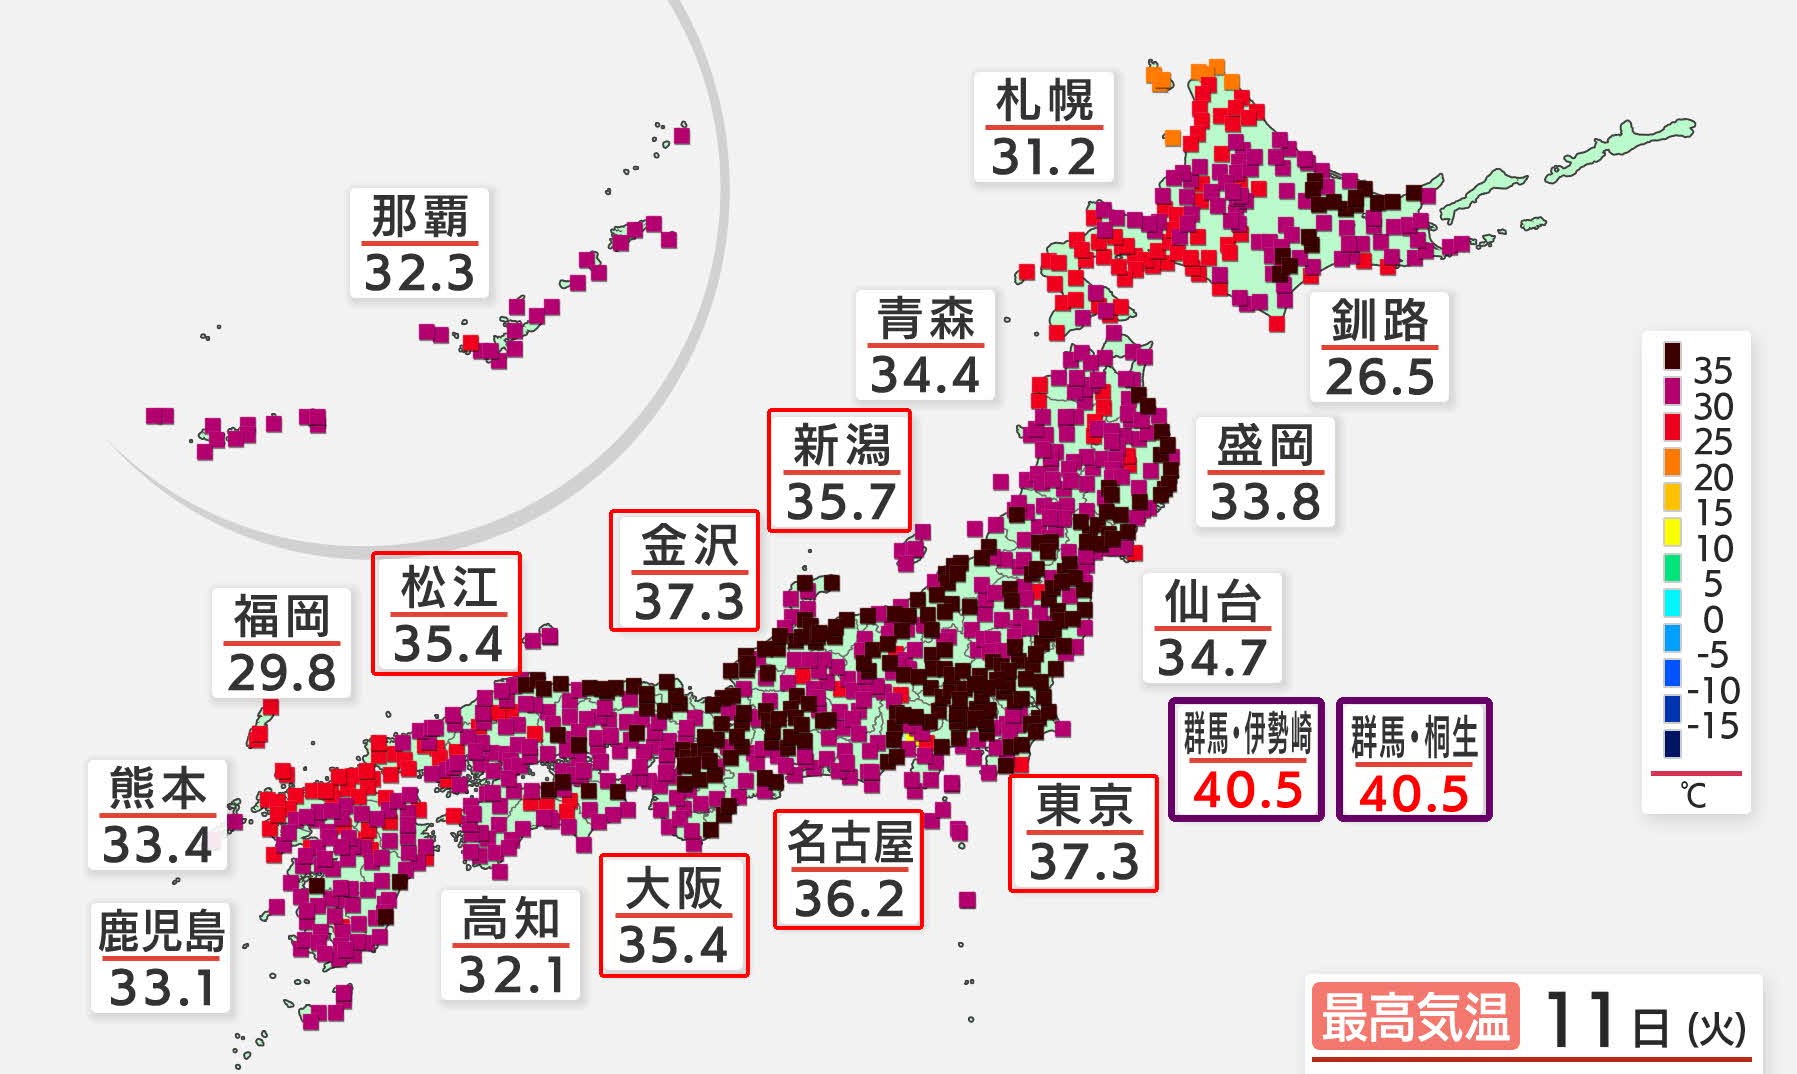 最高 気温 2020 日本の最高気温の記録は46.3℃である(森田正光)